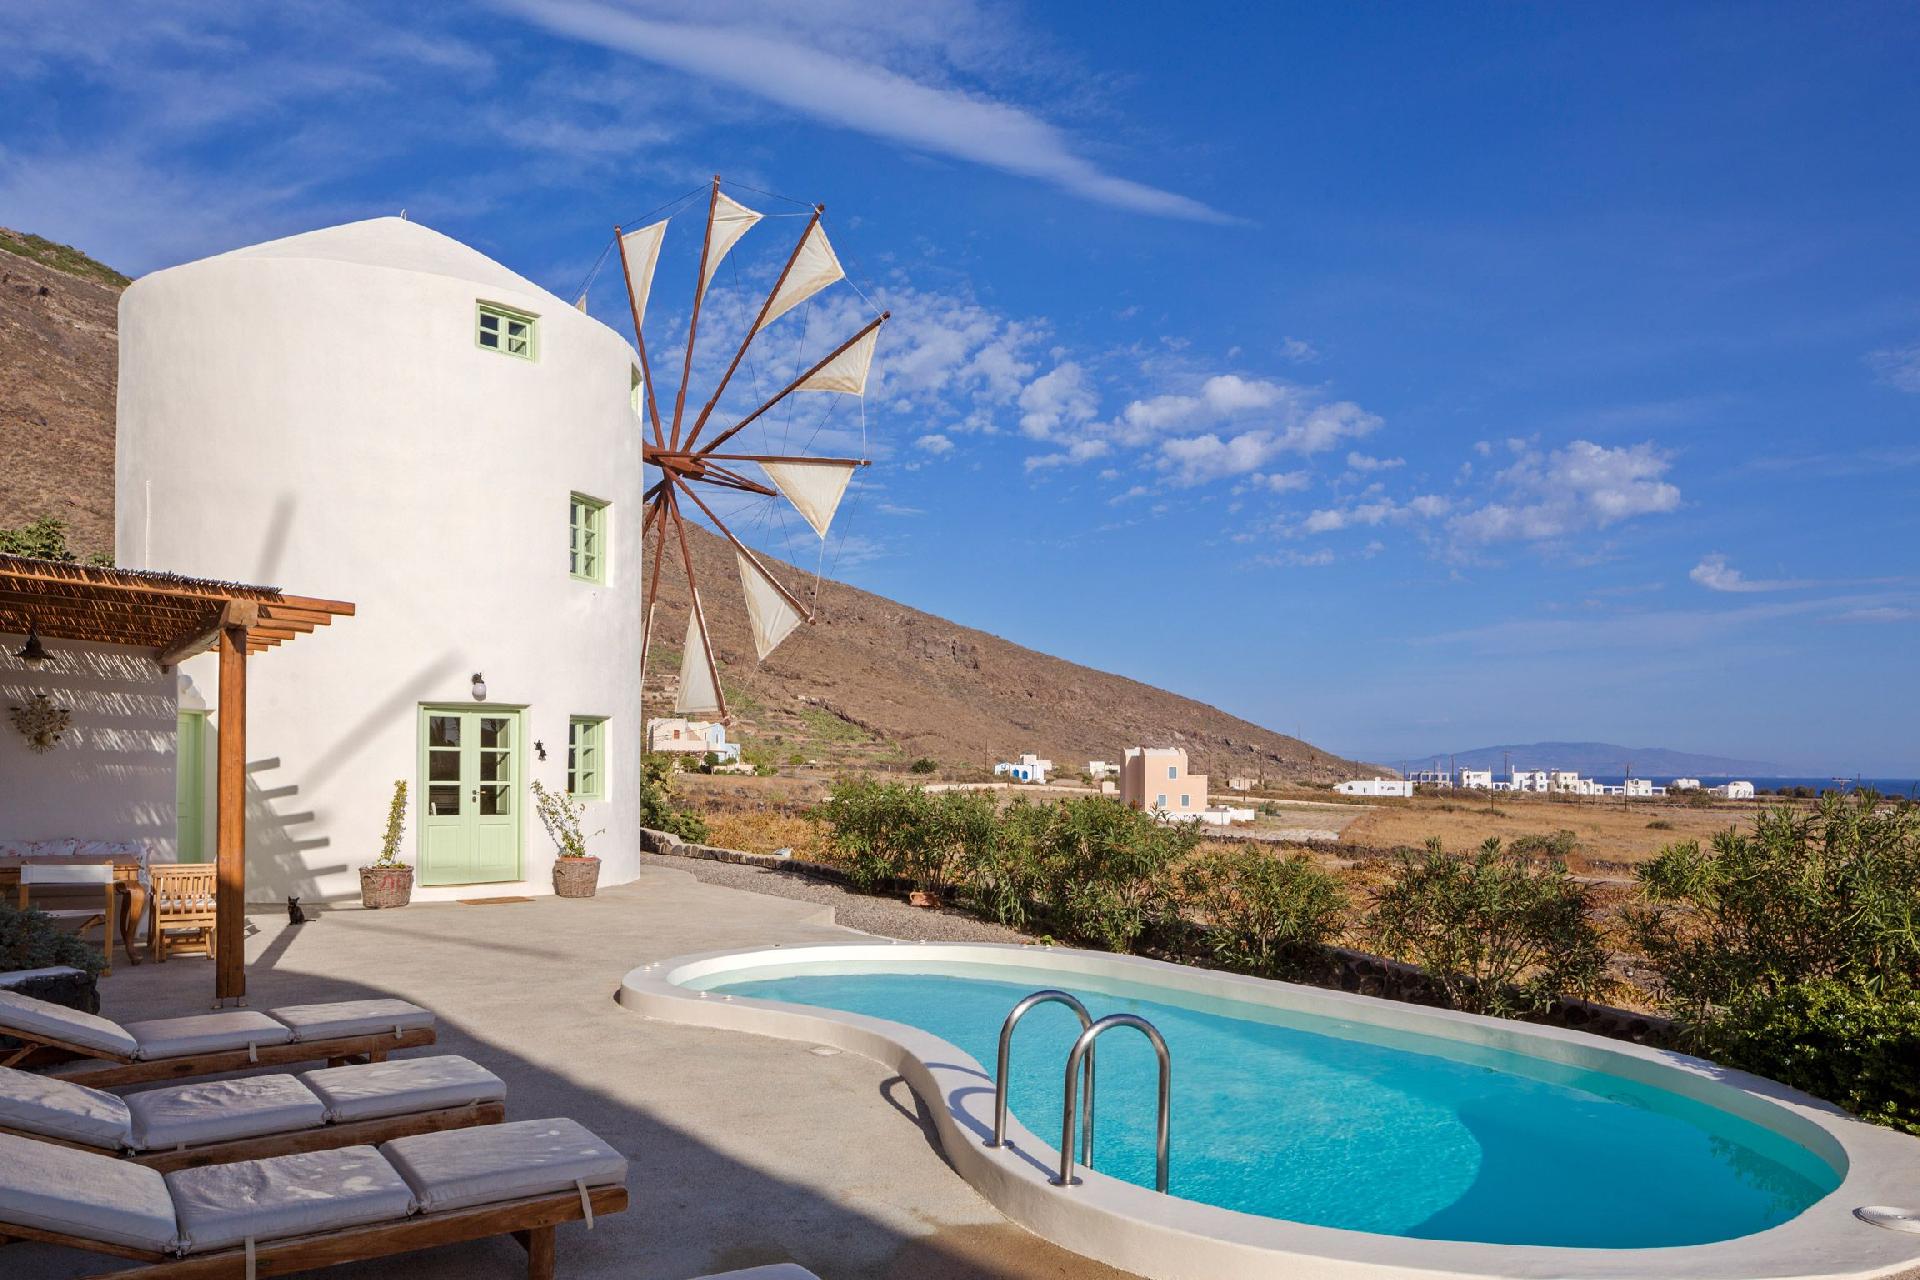 Ferienhaus mit Privatpool für 5 Personen ca.   in Griechenland